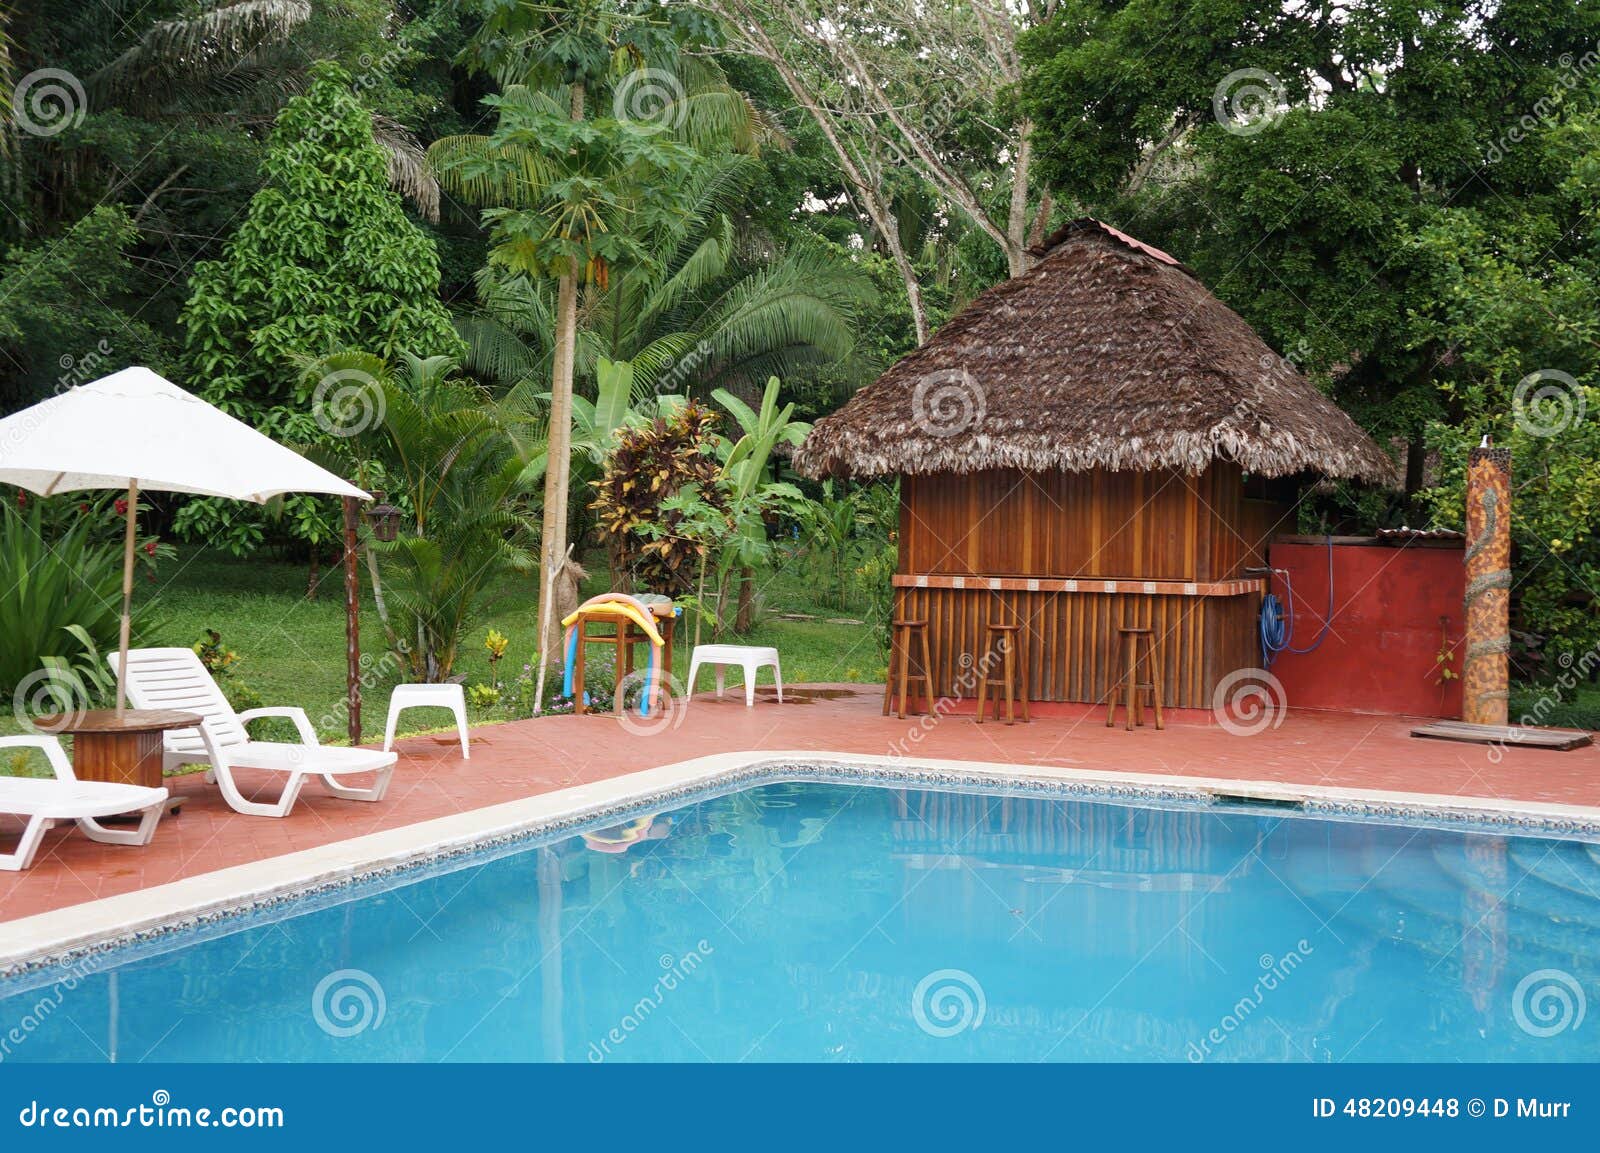 jungle pool getaway